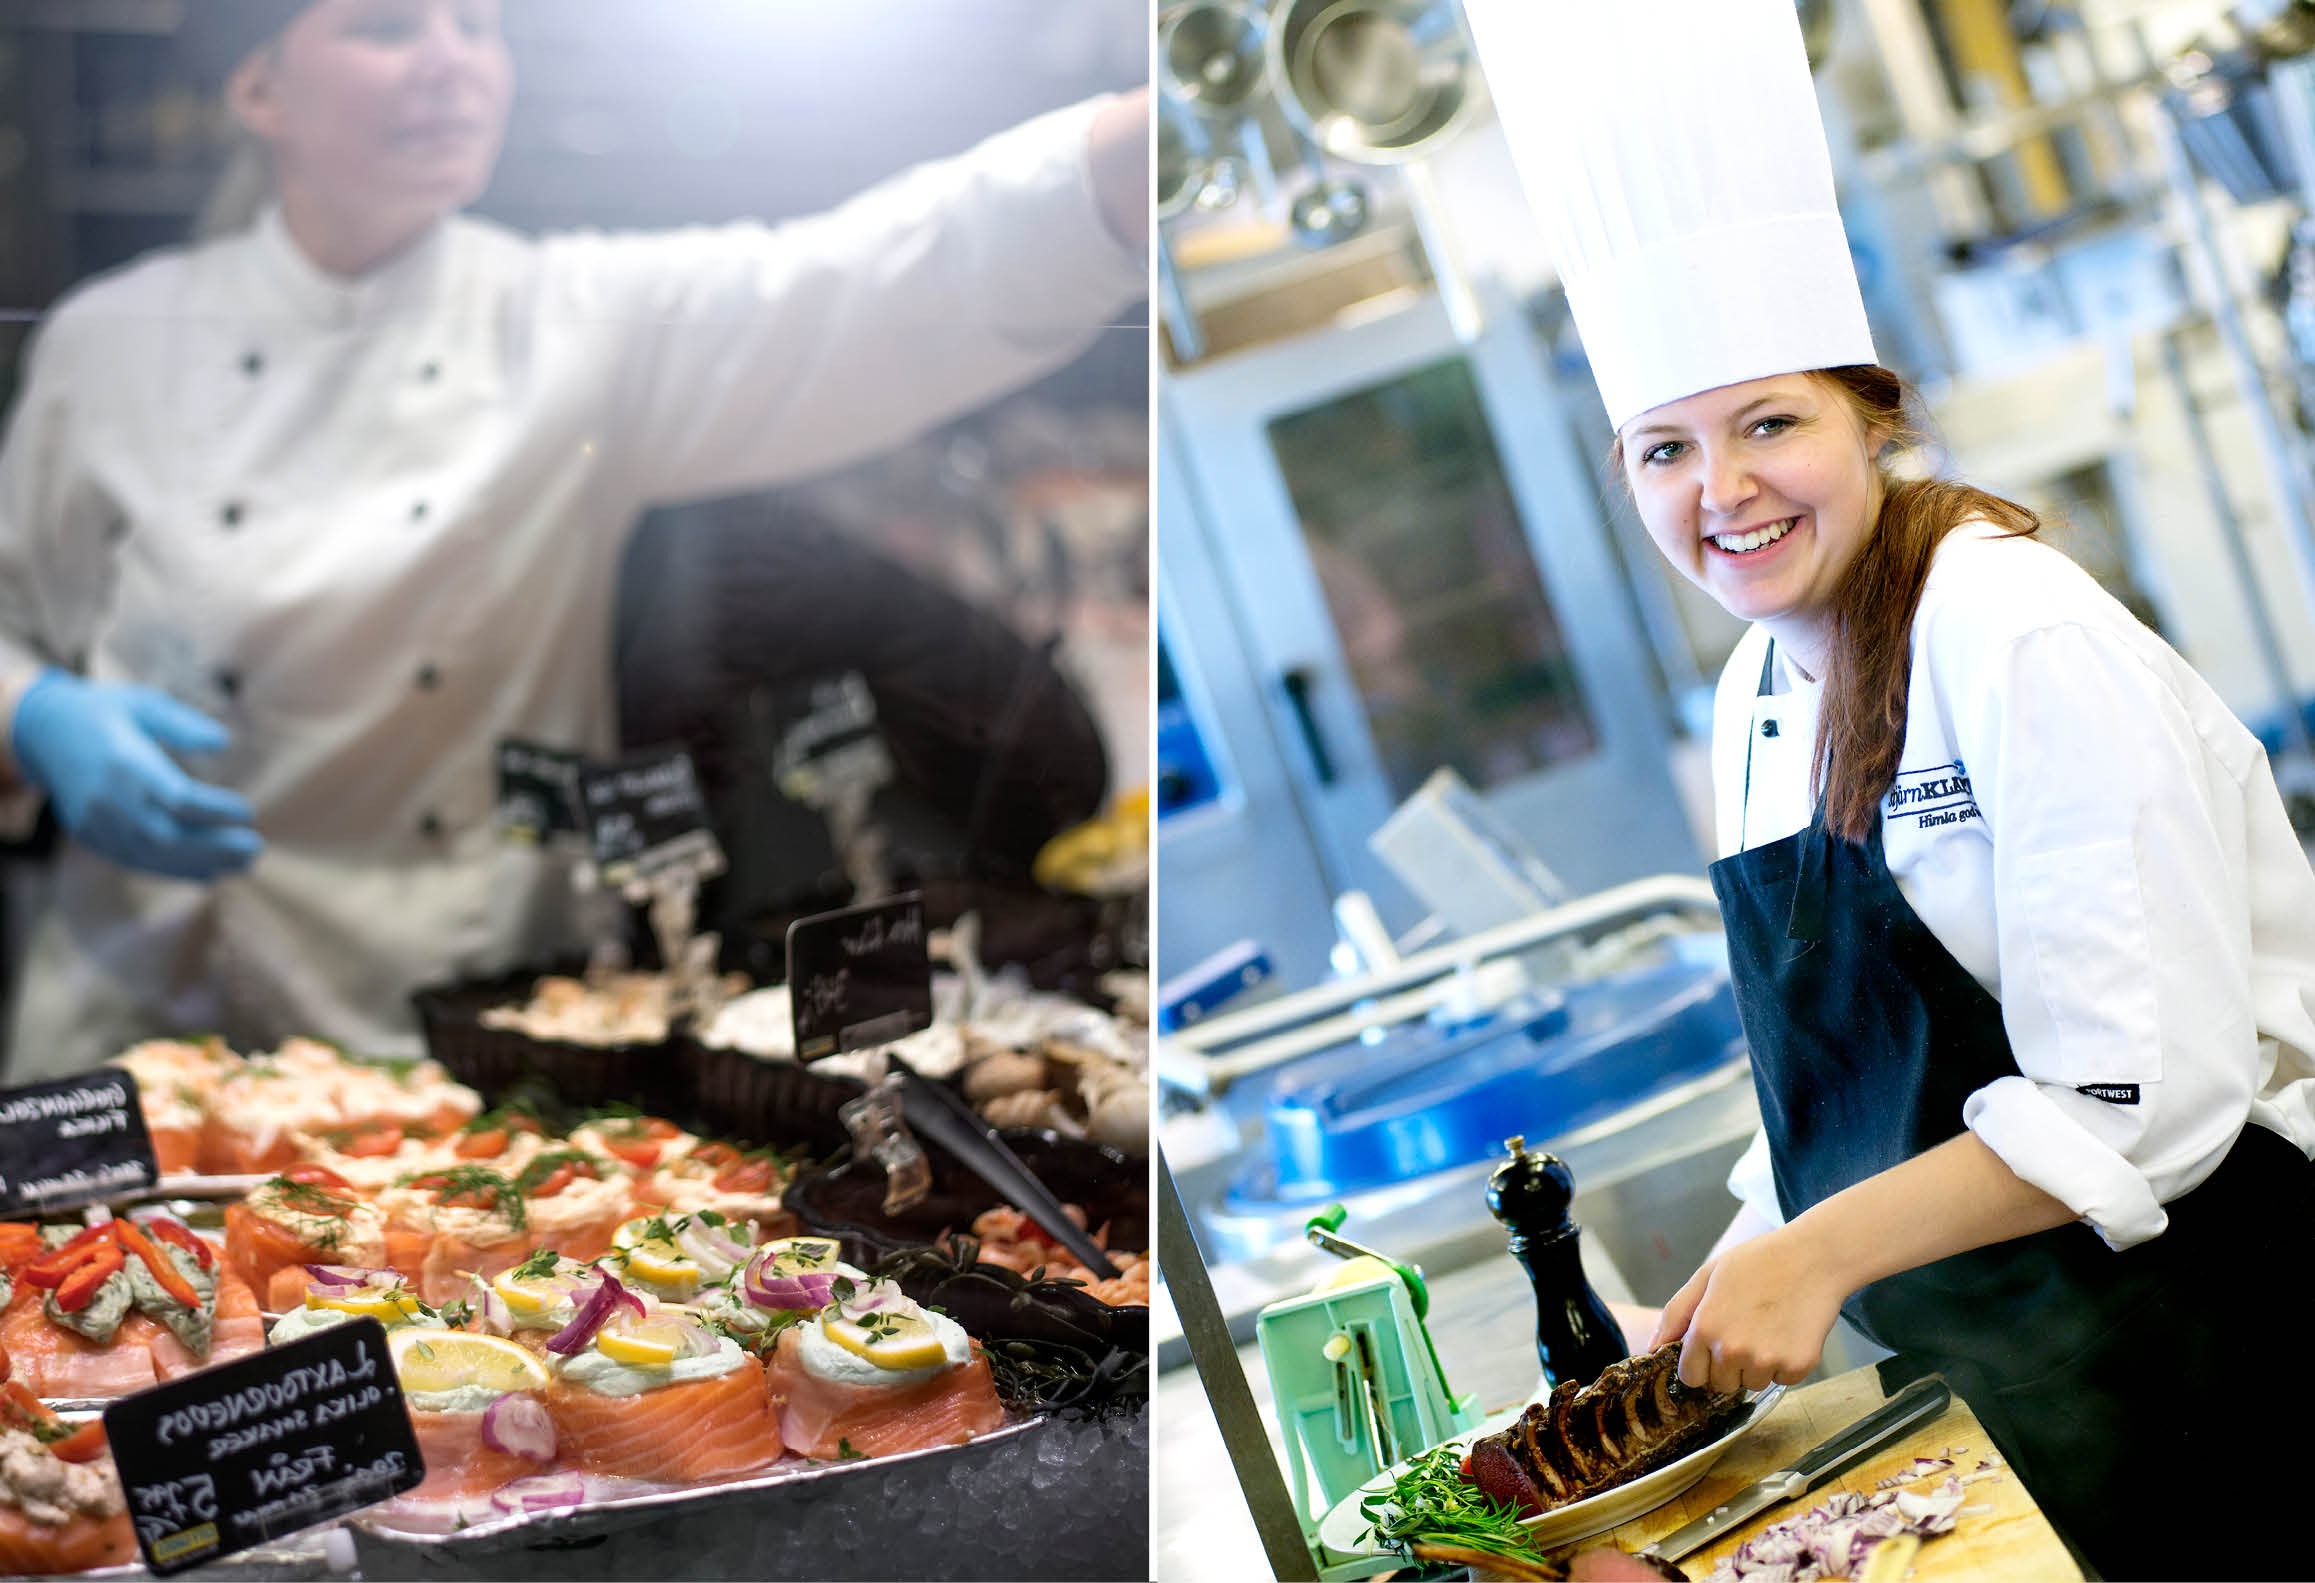 Vänster bild visar butikssäljare vid charkdisk. Höger bild visar kock som lagar mat i restaurangkök